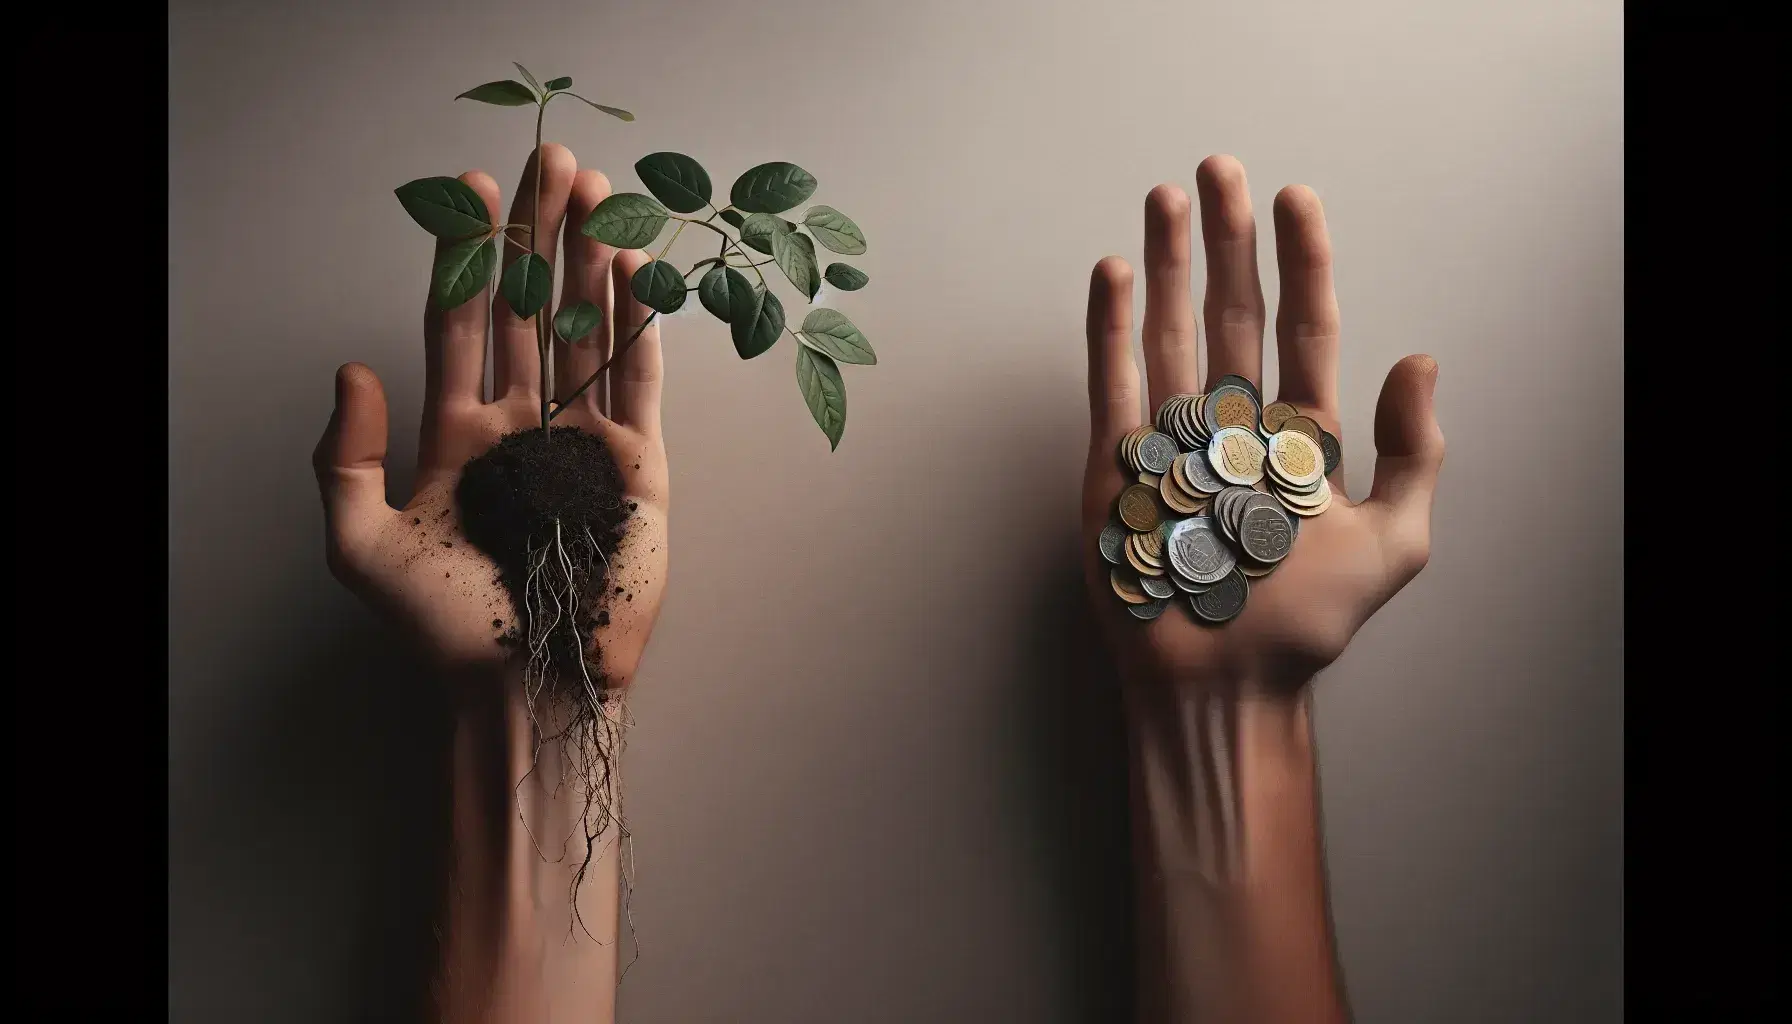 Manos extendidas sosteniendo una planta con raíces visibles y un montón de monedas metálicas, simbolizando el crecimiento y la inversión.